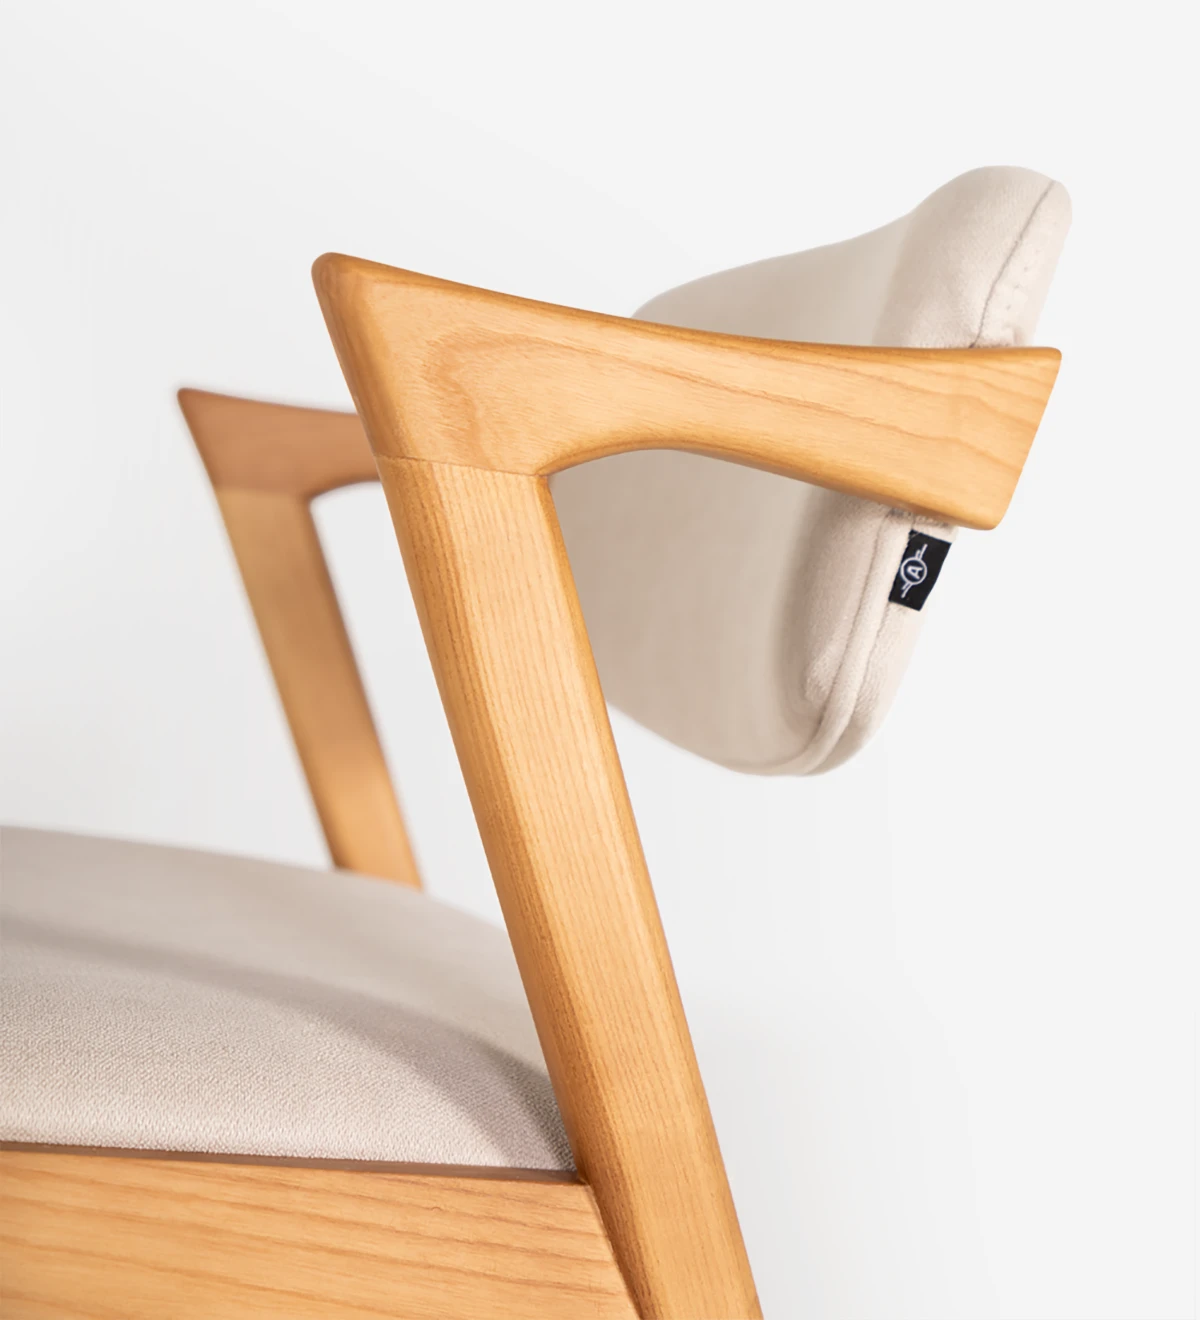 Silla en madera de fresno color miel, con asiento y respaldo tapizado en tejido.